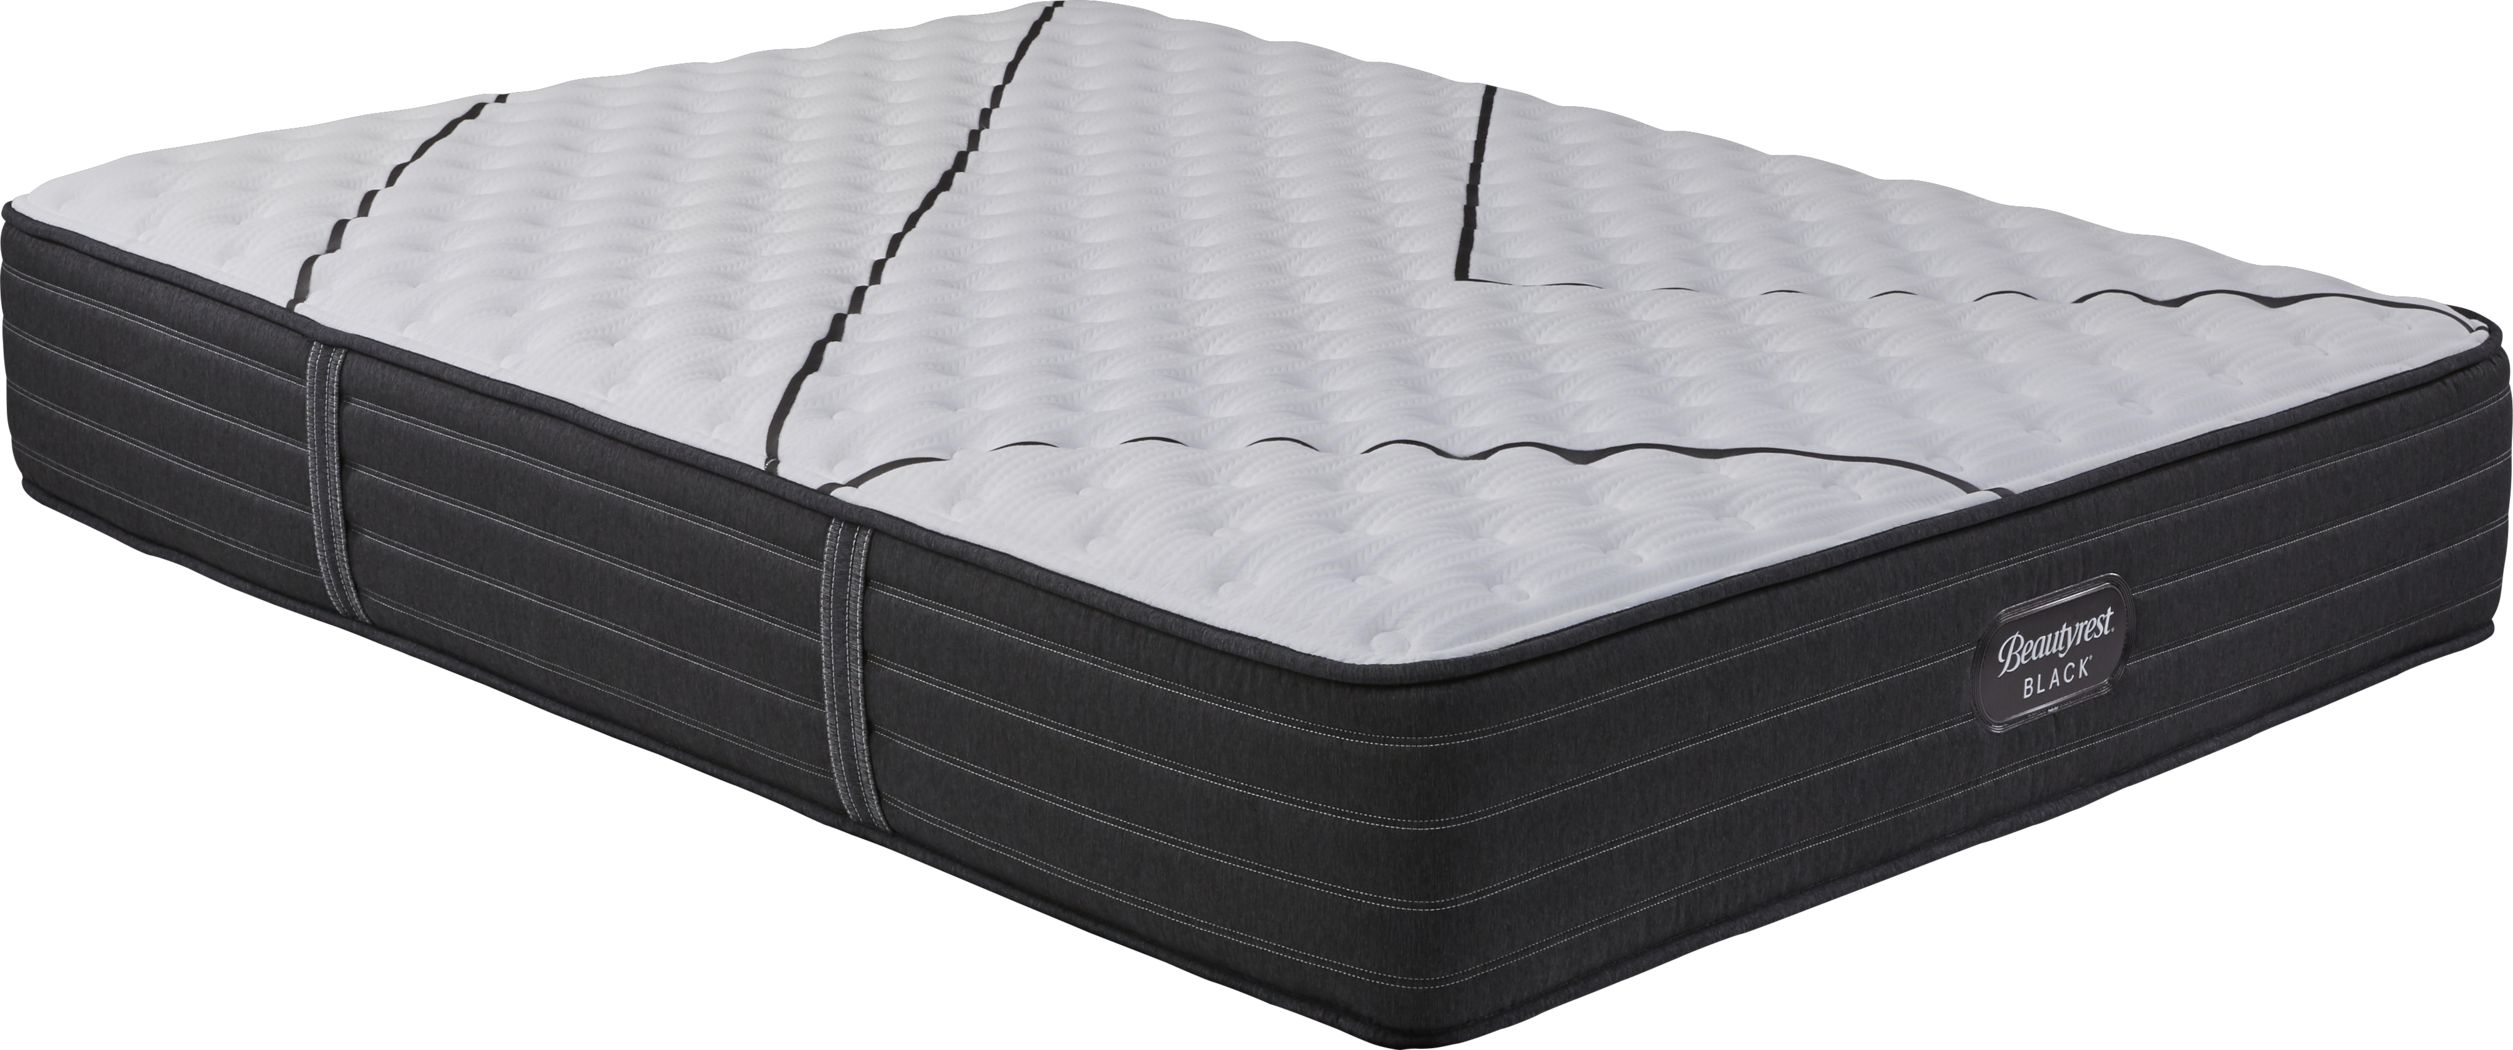 beautyrest platinum extra firm queen mattress